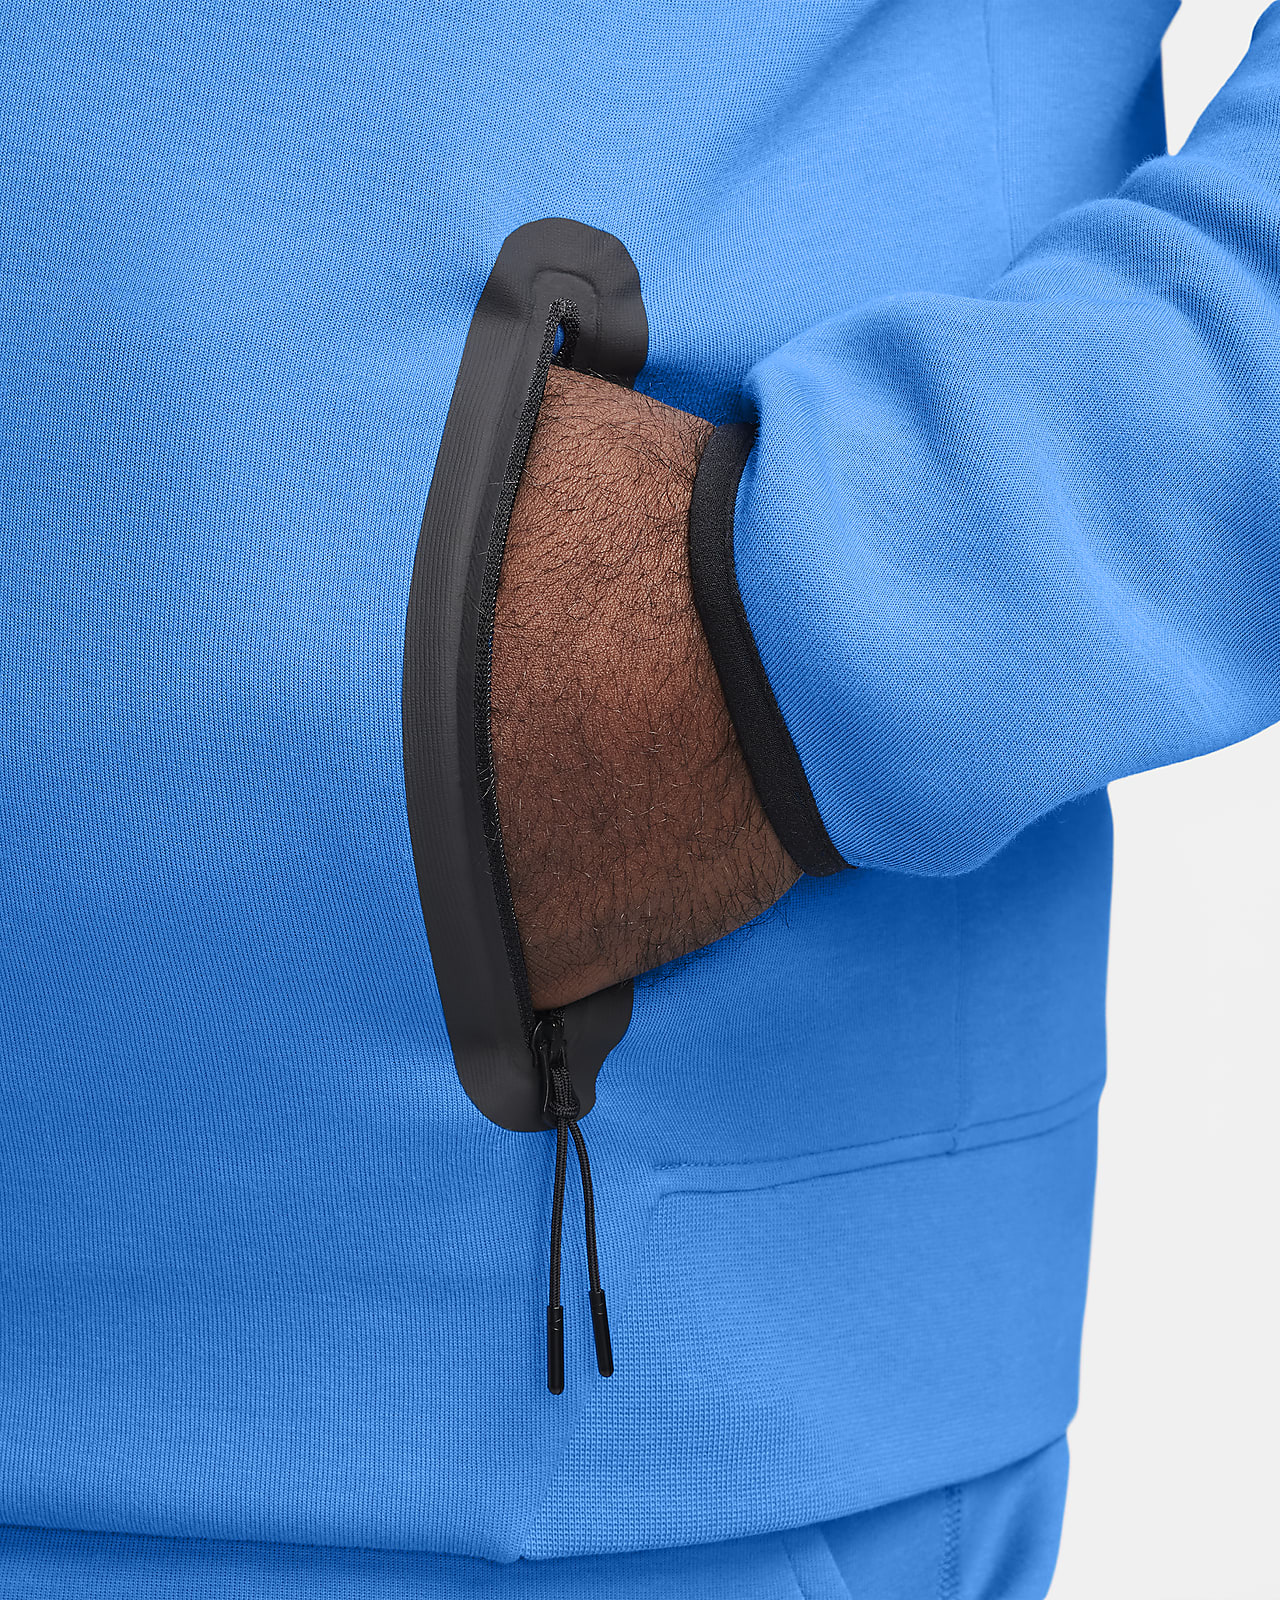 Sweat zippé à capuche Nike Tech Fleece Windrunner Beige & Blanc pour Homme